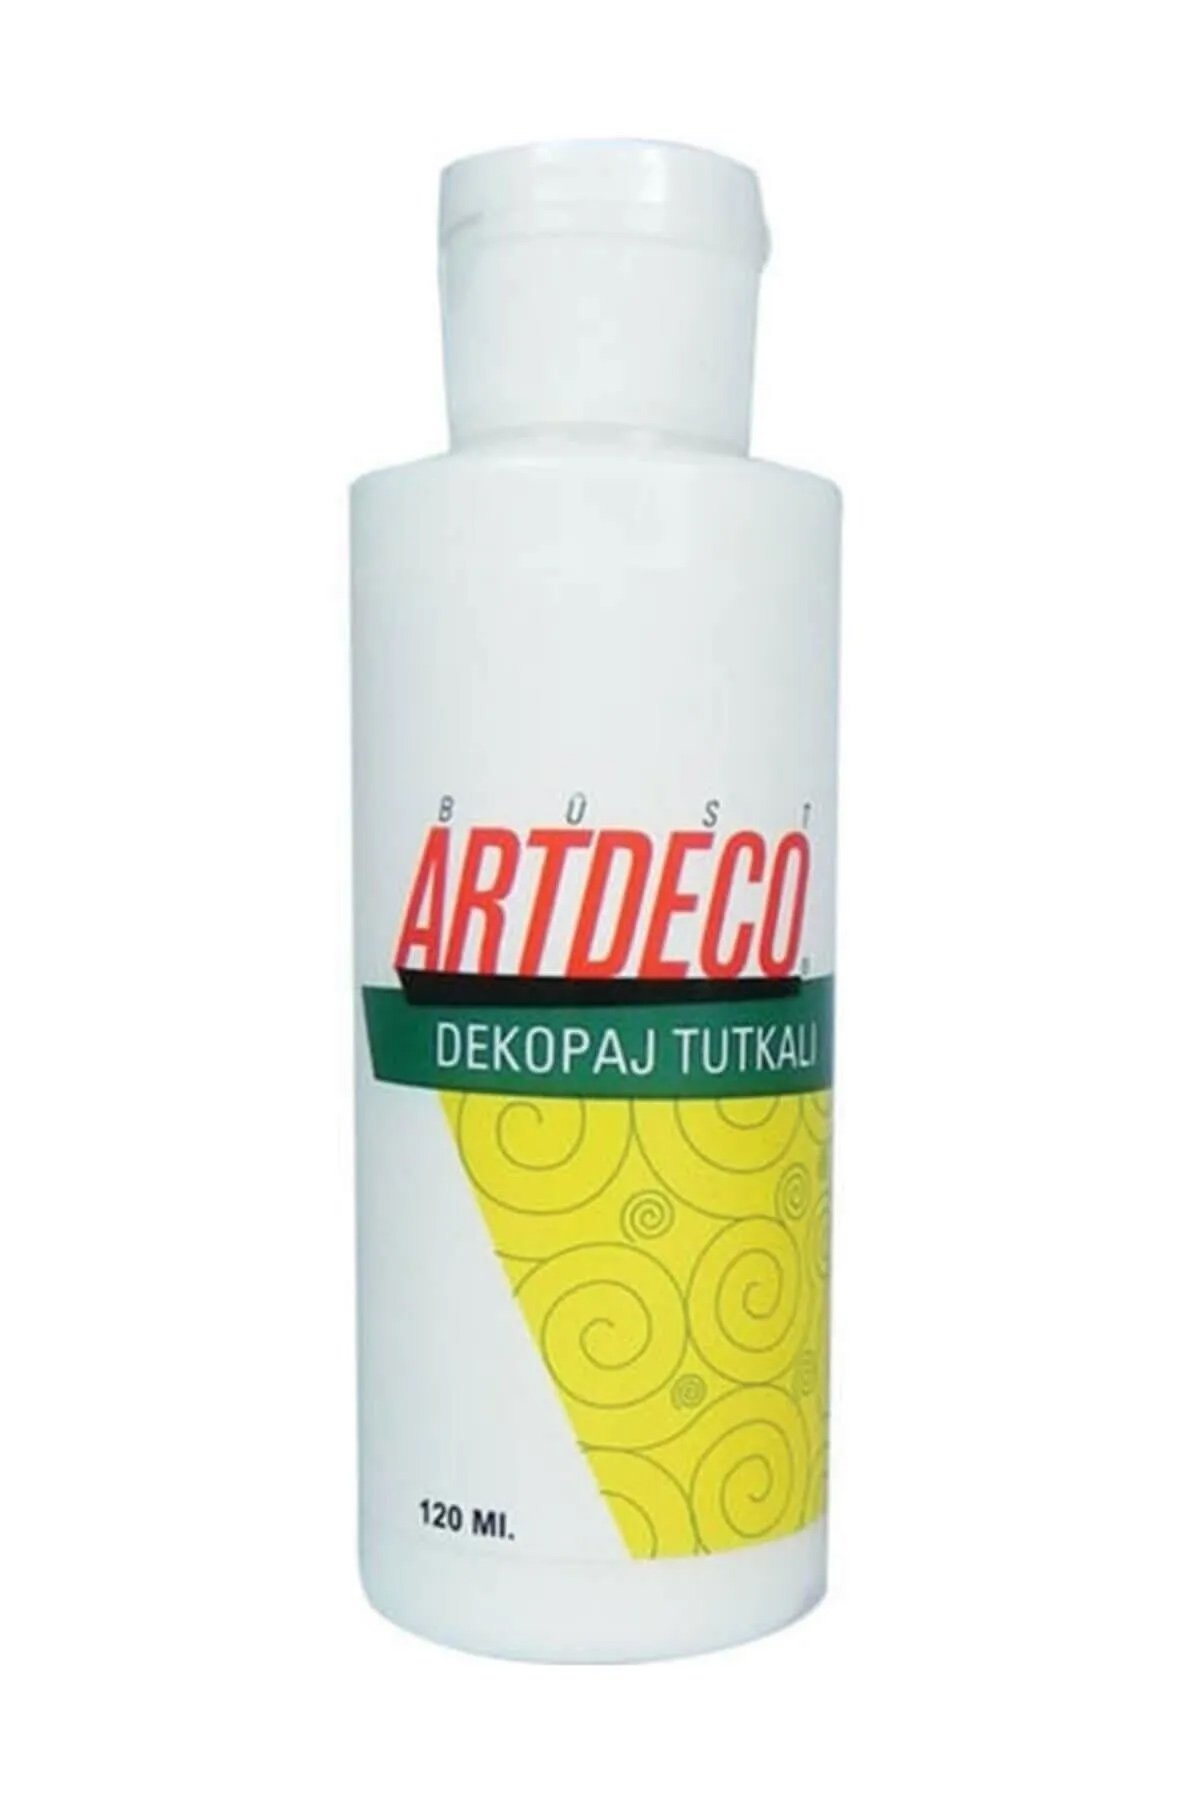 Artdeco%20Dekopaj%20Tutkalı%20120%20ml